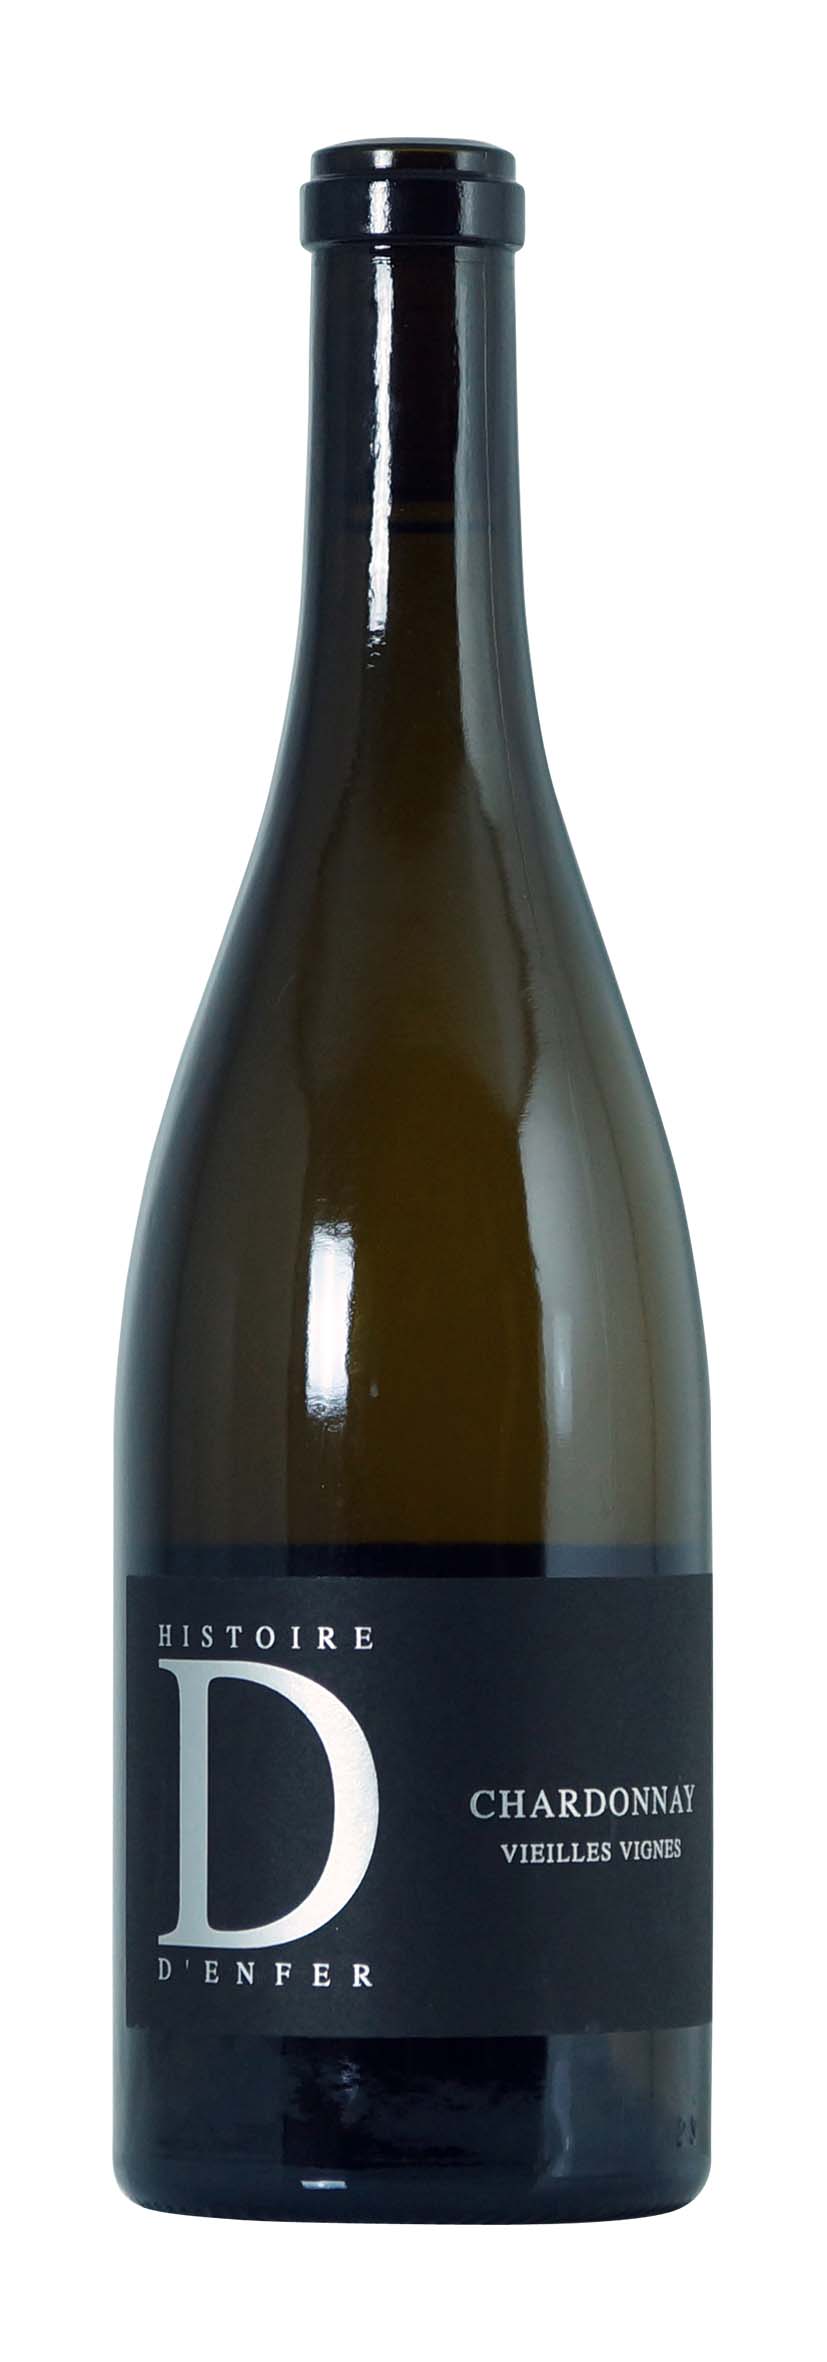 Valais AOC Chardonnay Réserve Vieilles Vignes 2012